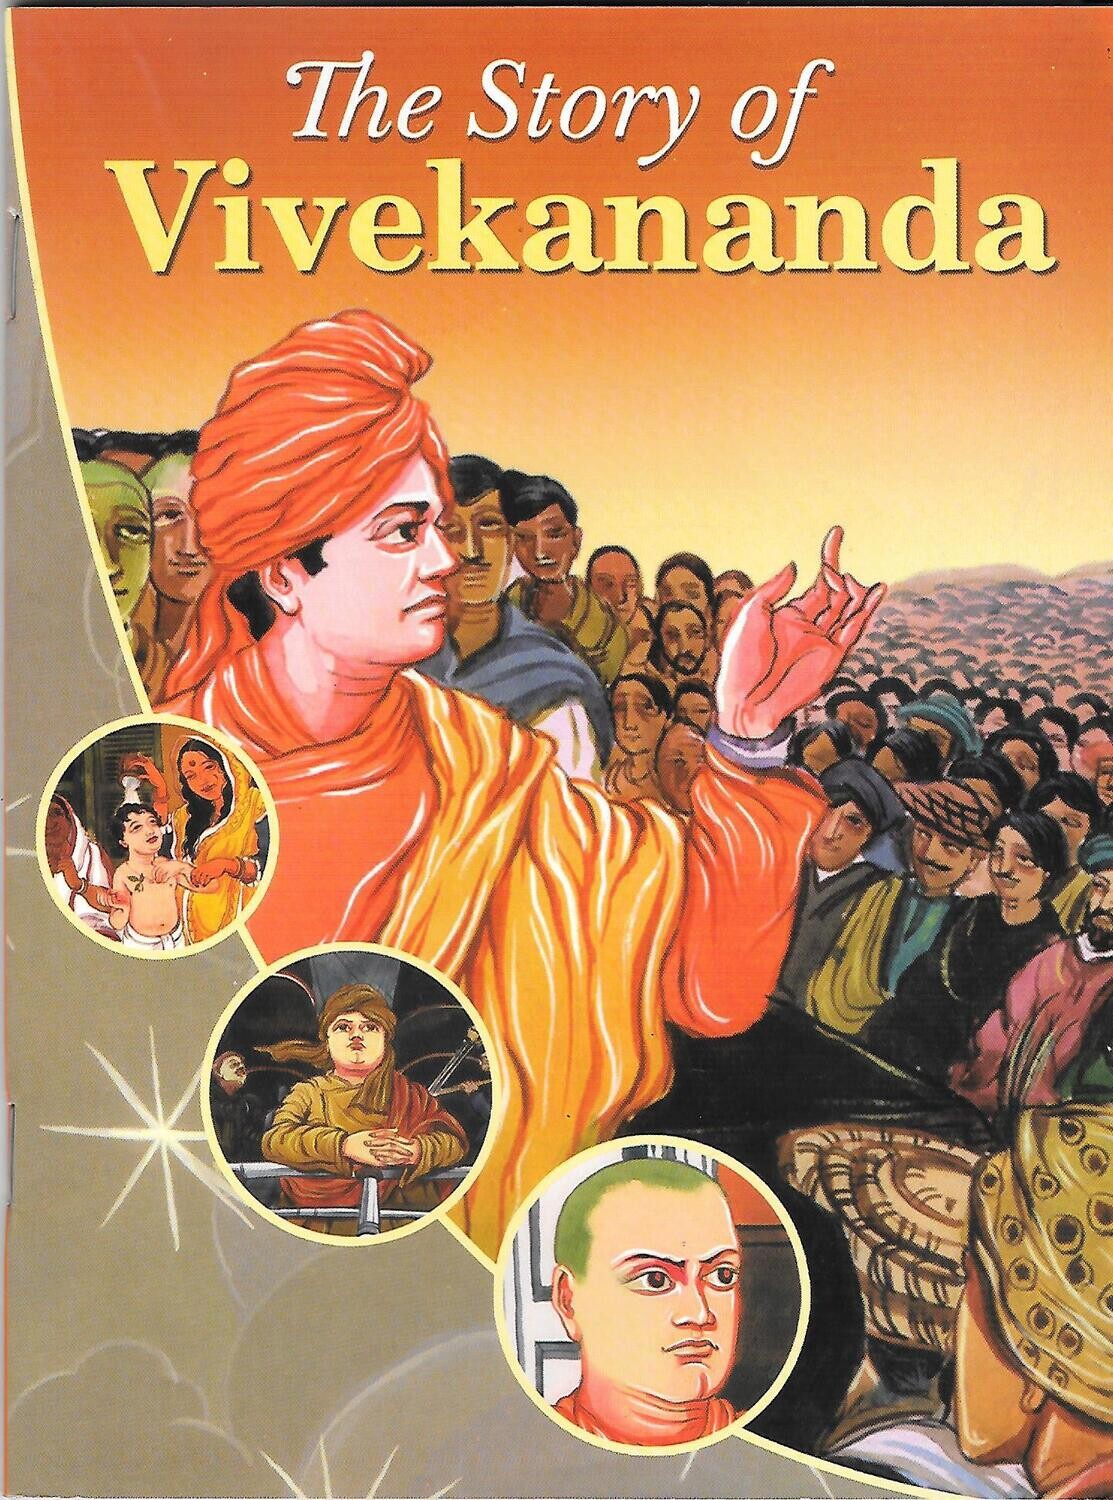 THE STORY OF VIVEKANANDA